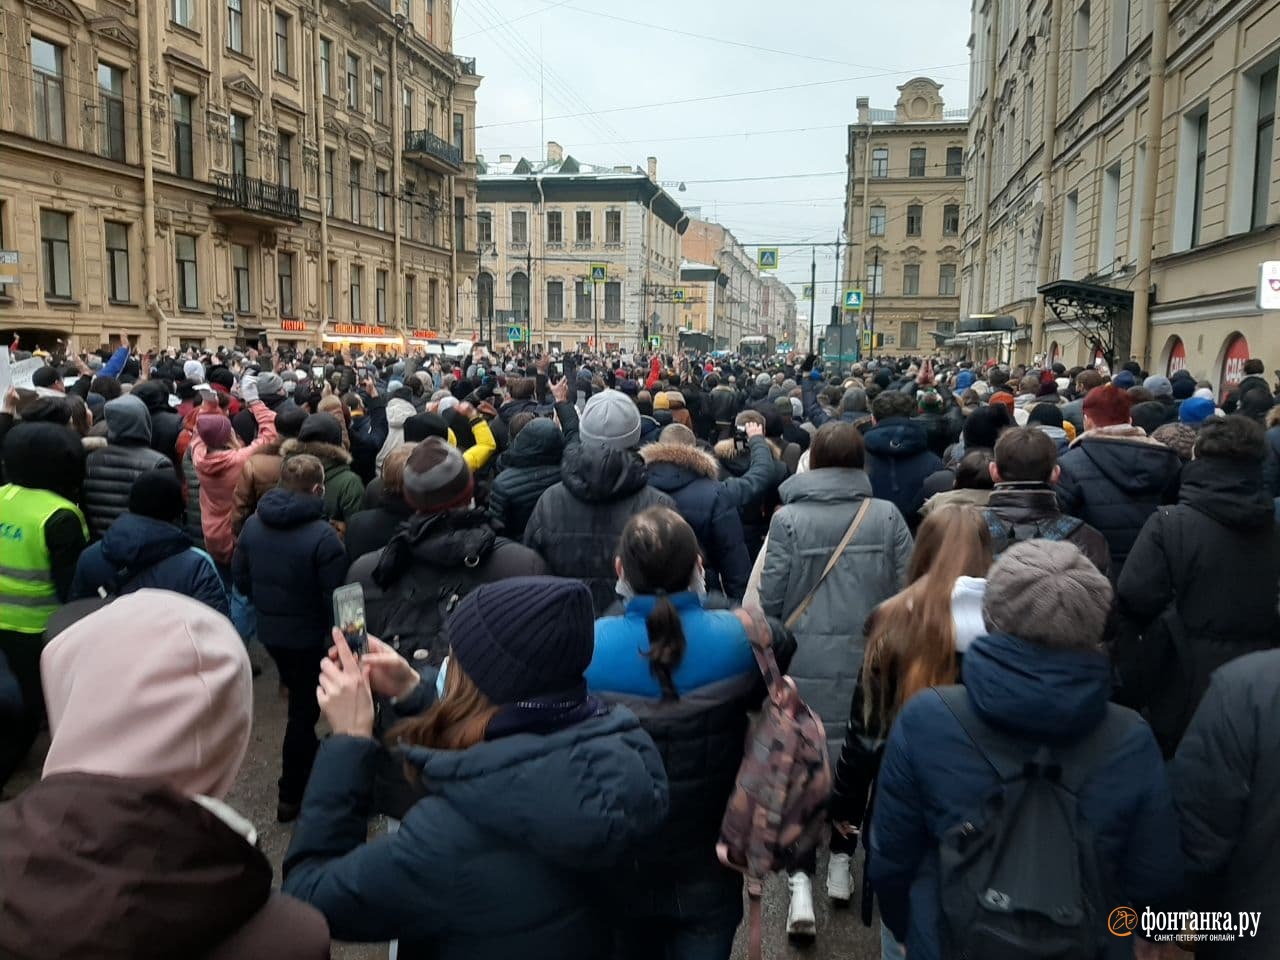 Сегодня свежие новости события что происходит. Гороховая улица в Санкт-Петербурге протестующие. Протесты на Невском.